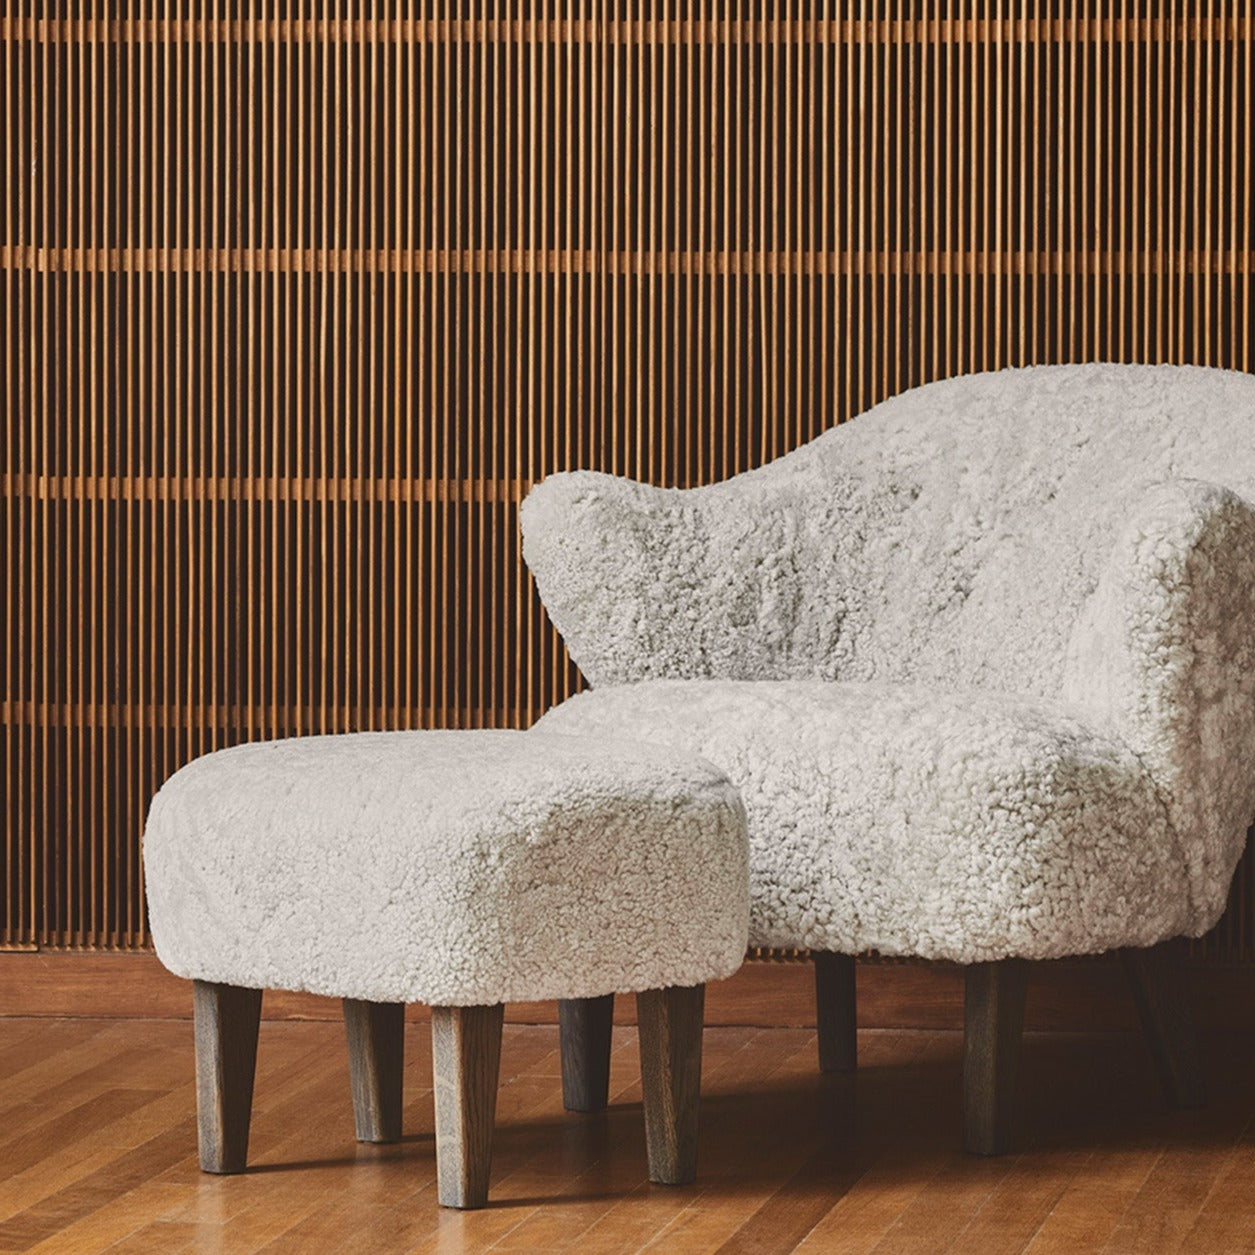 Lenestolen Ingeborg Lounge Chair fra Audo Copenhagen har et elegant formspråk som vi liker godt. Og i saueskinn, slik som originalen ble designet i 1940, blir den ekstra sjarmerende og karakteristisk!  For litt ekstra komfort anbefaler vi å bestille puffen Ingeborg også. En perfekt duo som ikke tar for mye plass!